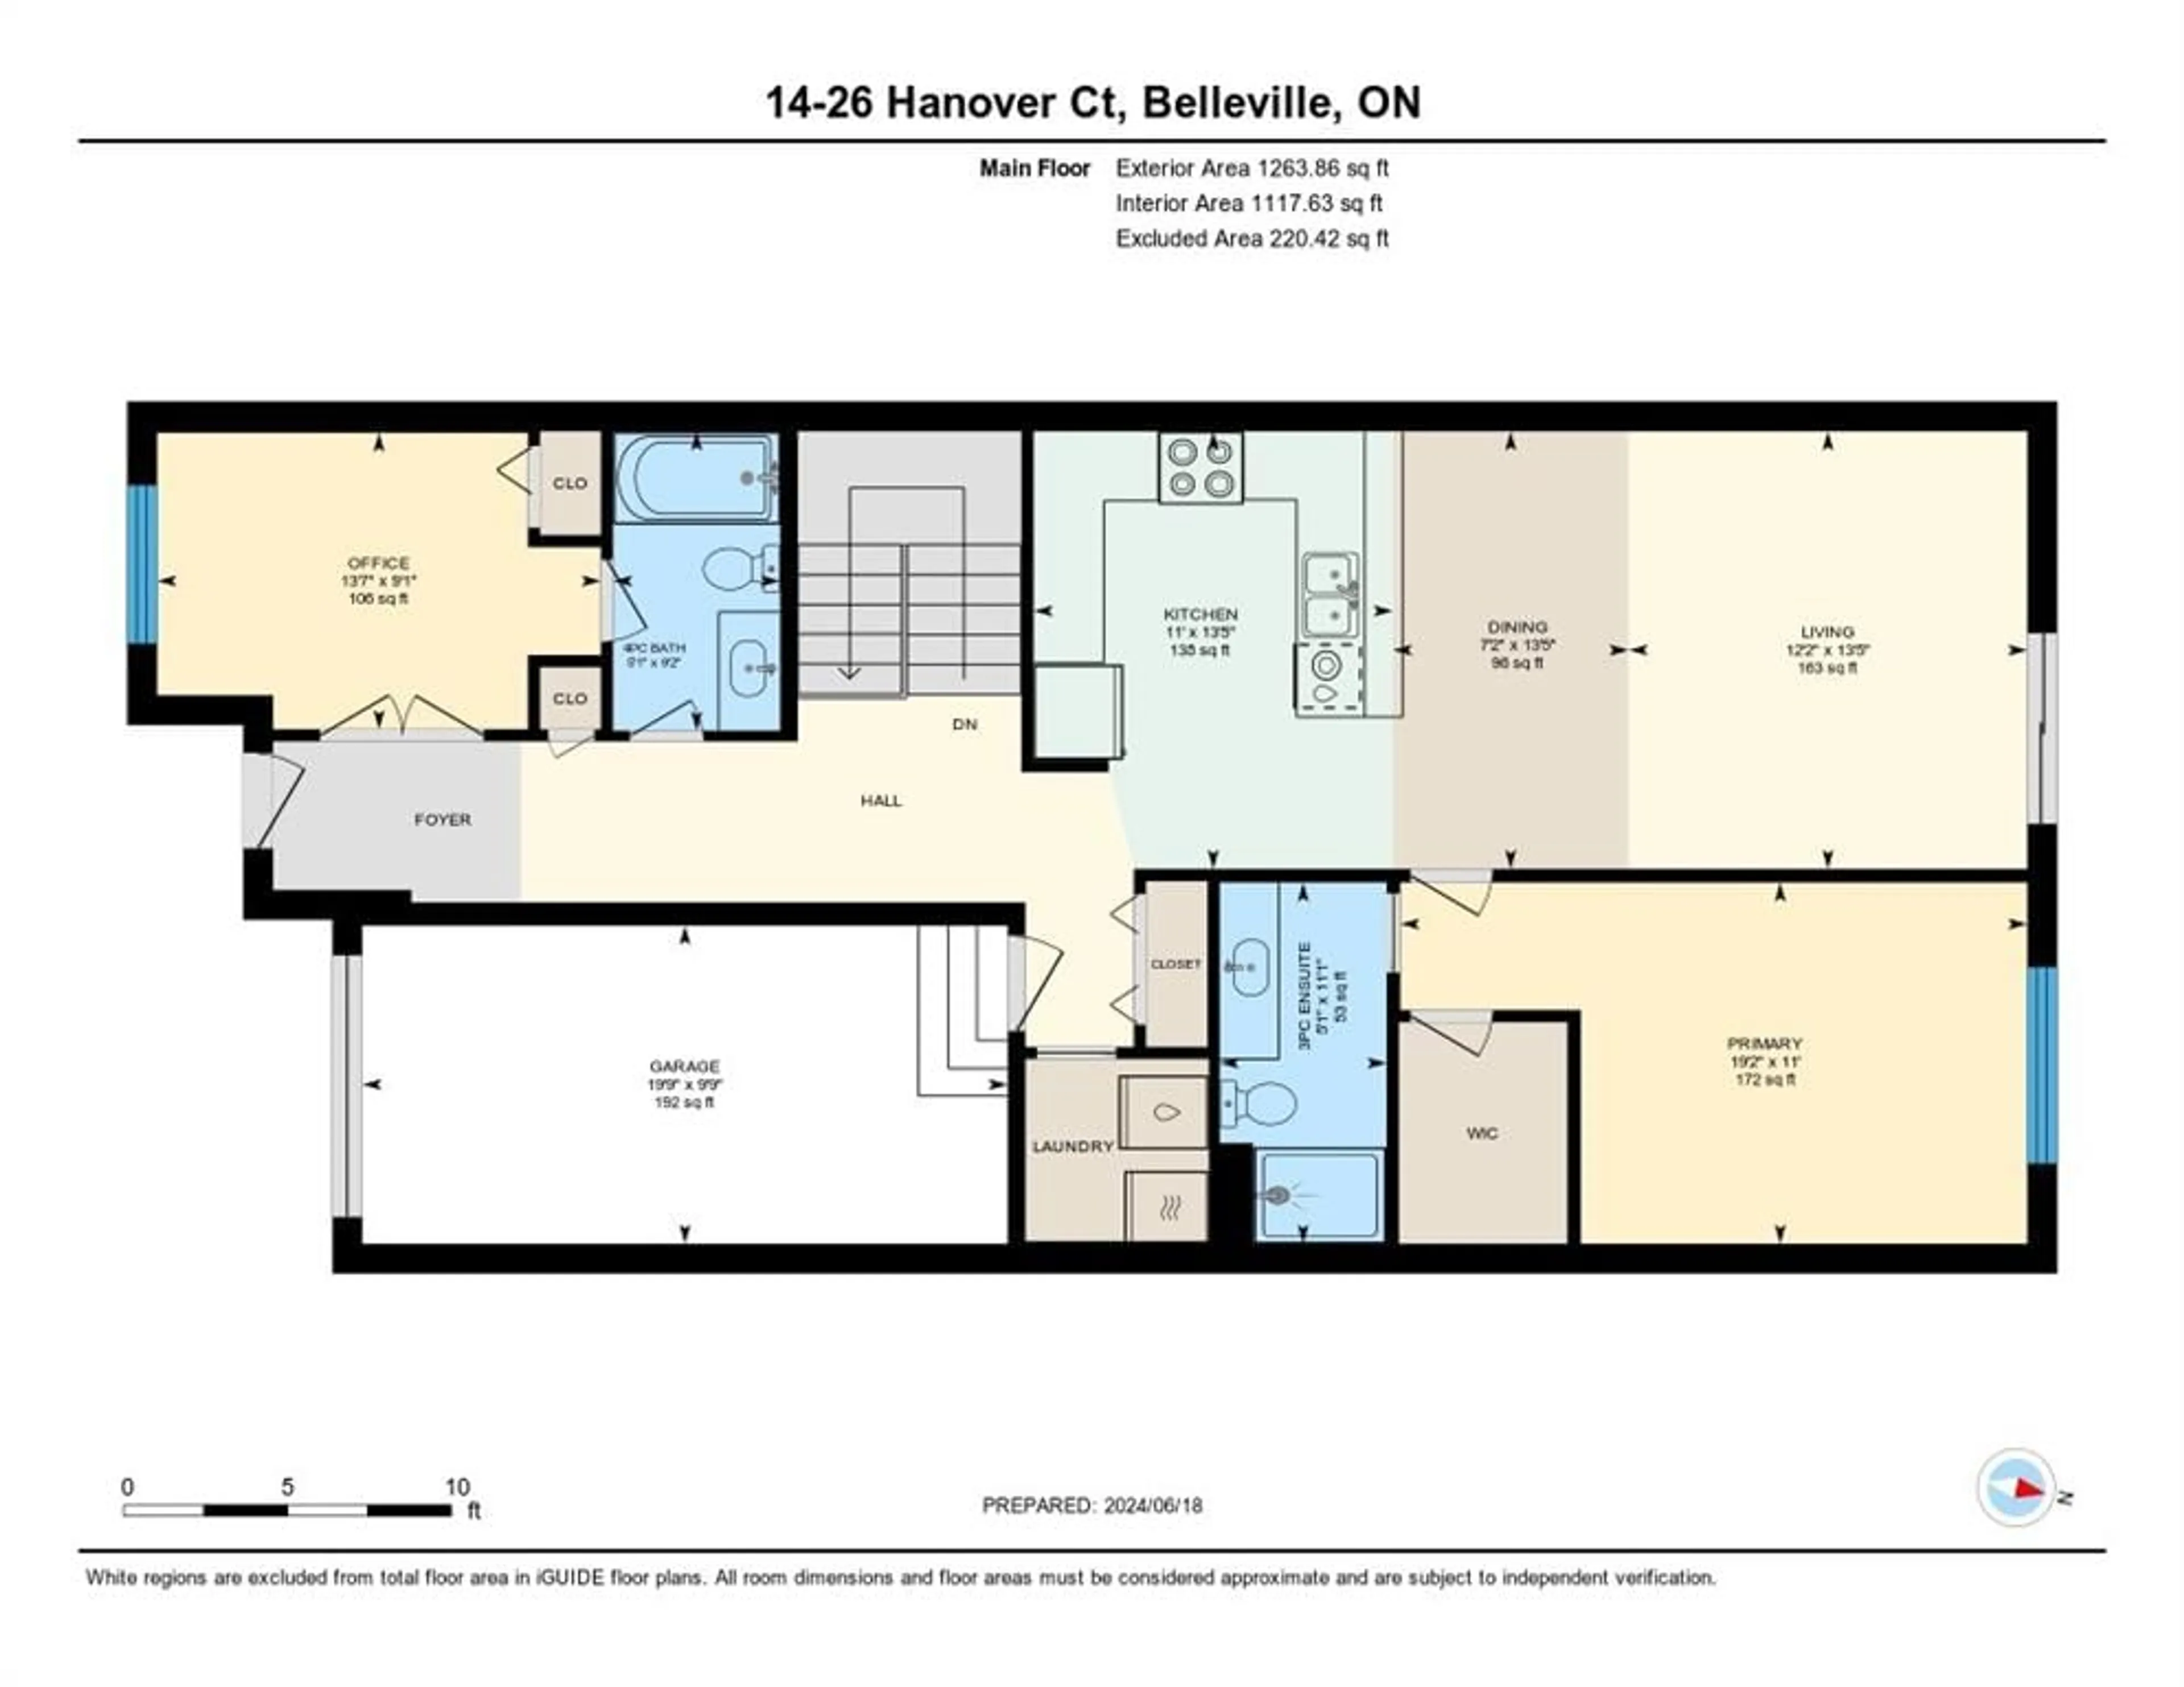 Floor plan for 26 Hanover Crt #14, Belleville Ontario K8N 0B3